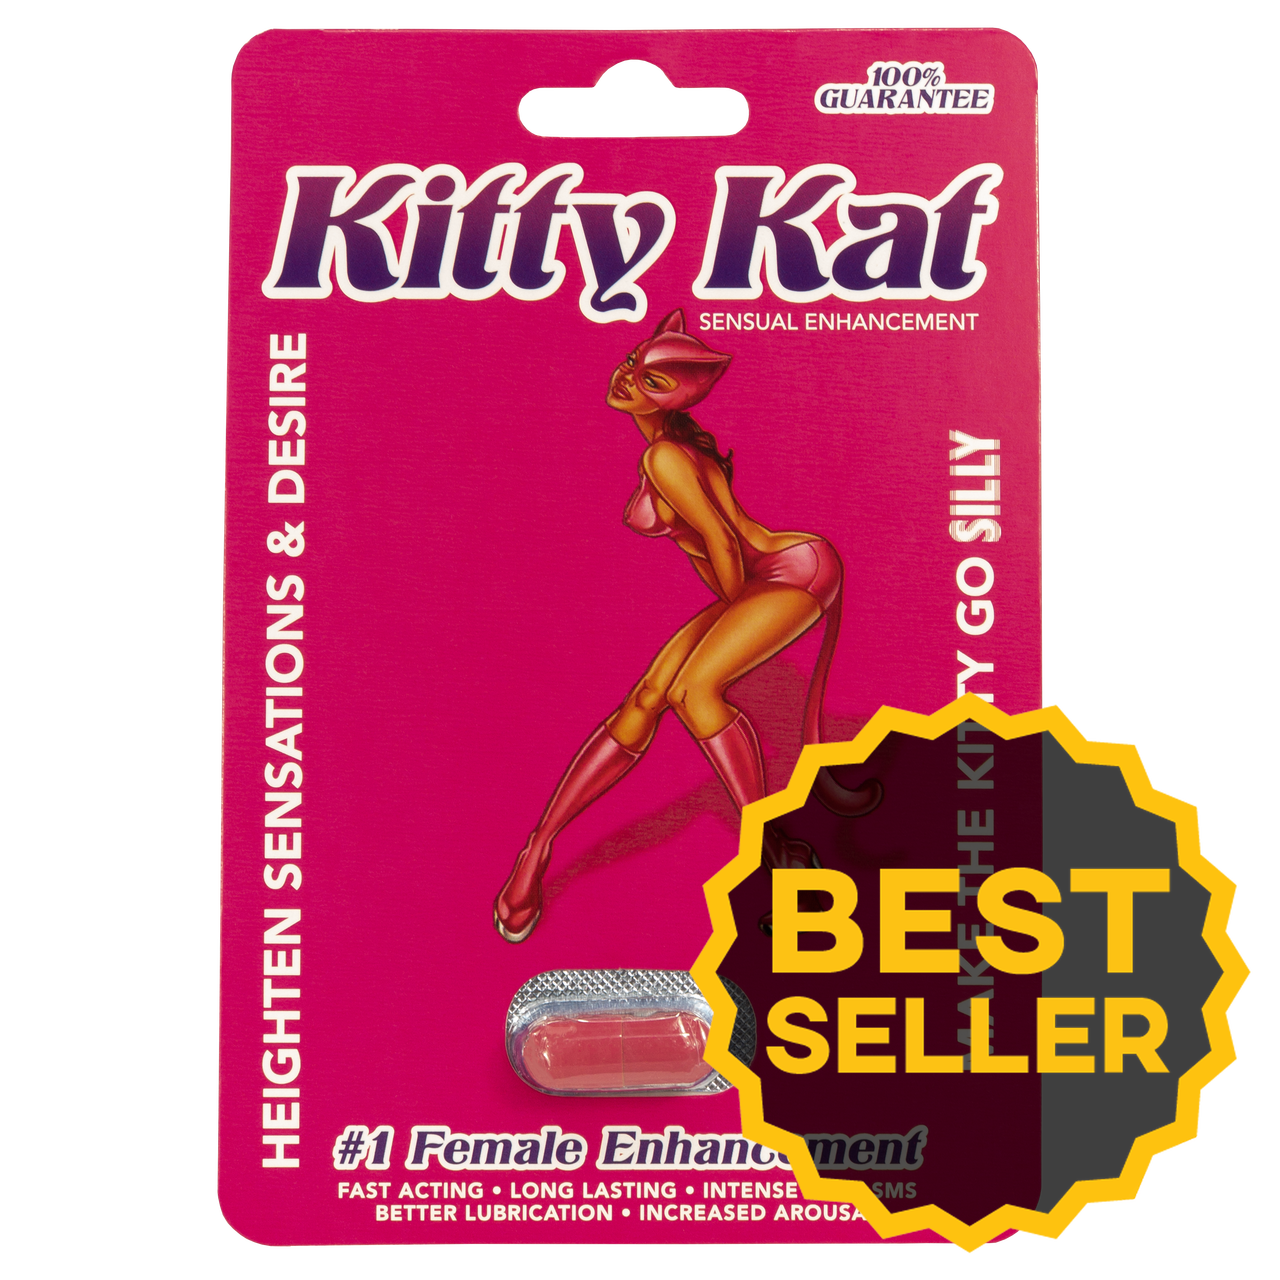 Buy Kitty Kat Ghana Buy Kitty Kat Pill Kitty Kat Online Ghana